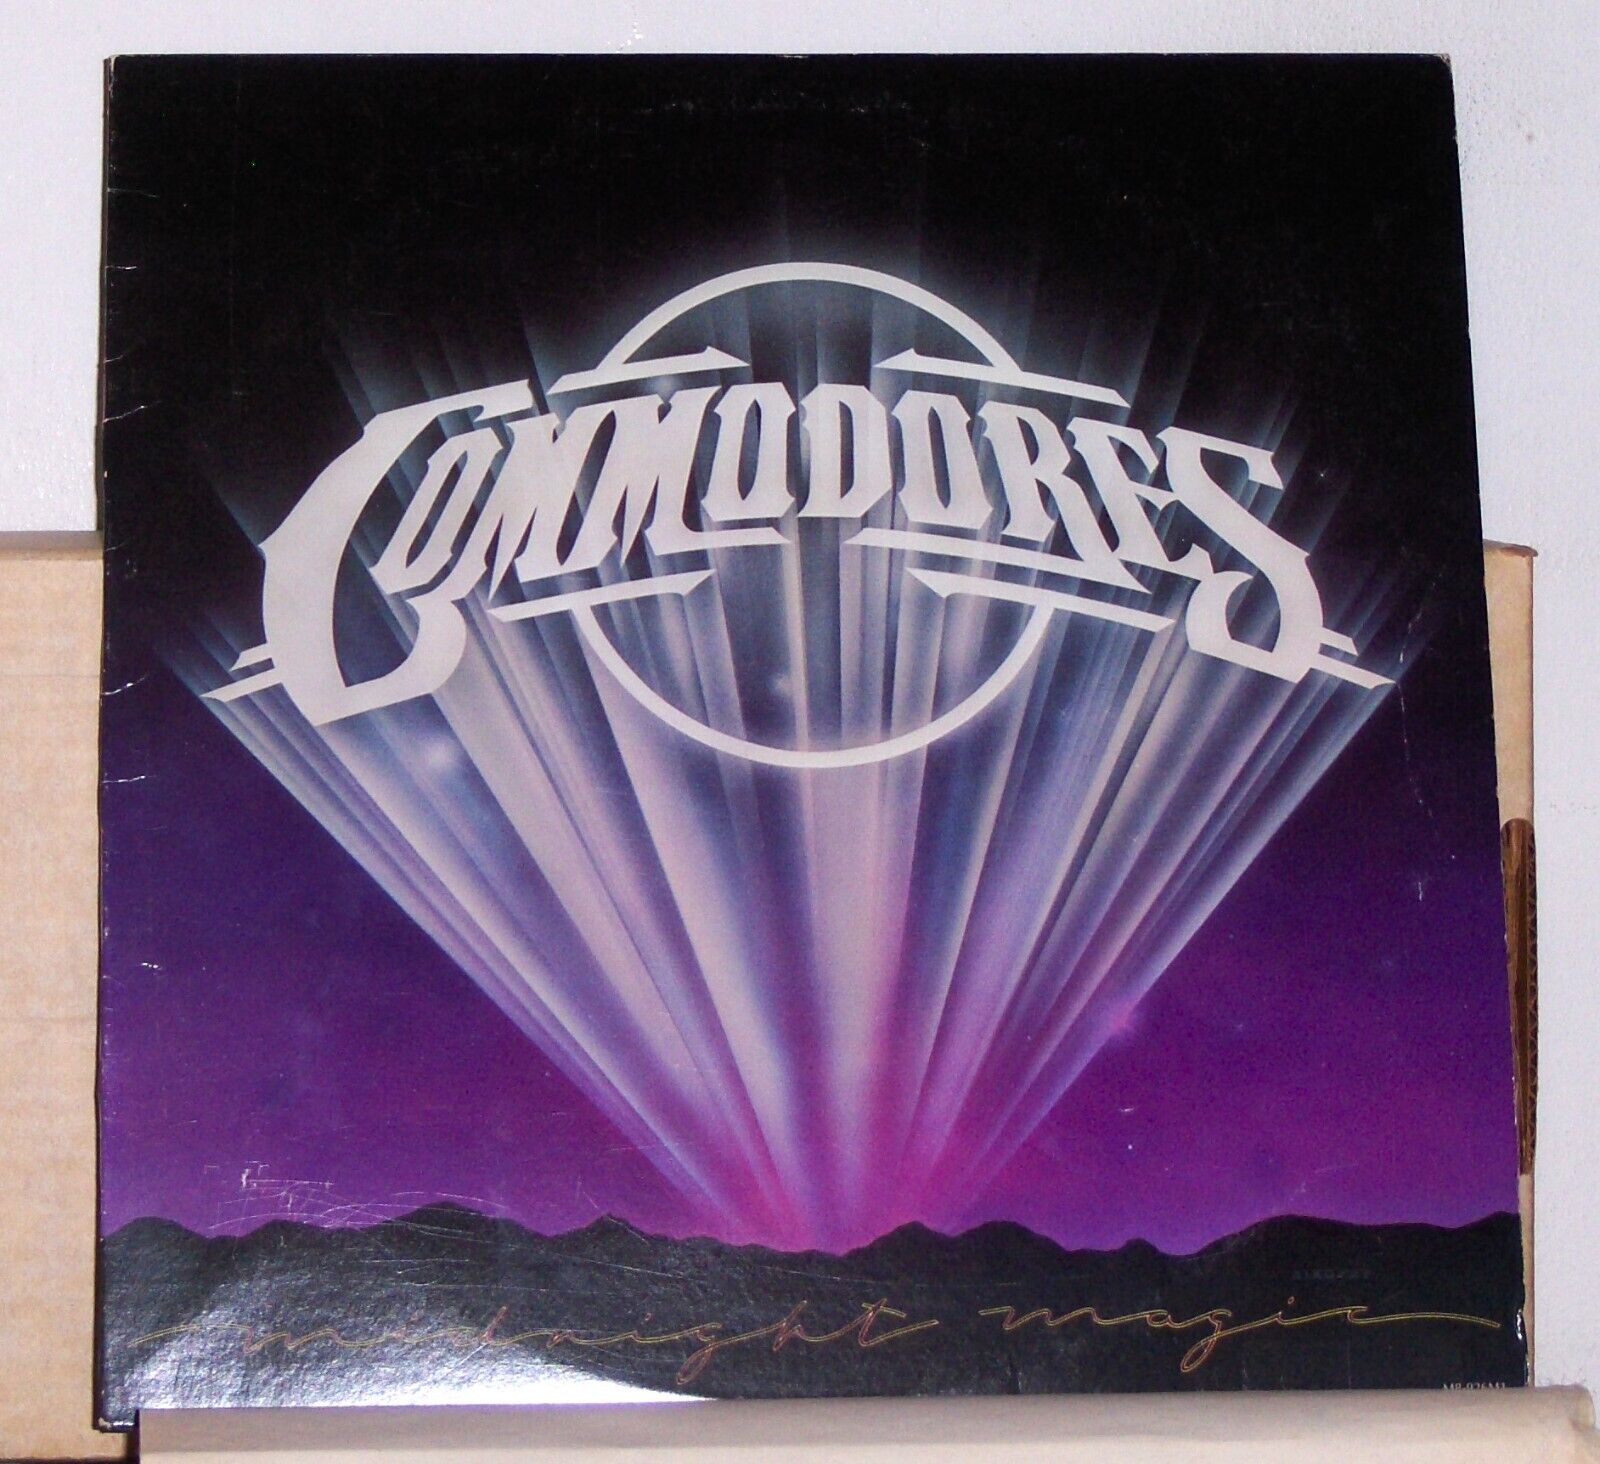 Commodores - Midnight Magic - 1979 LP Record Album - Vinyl Excellent